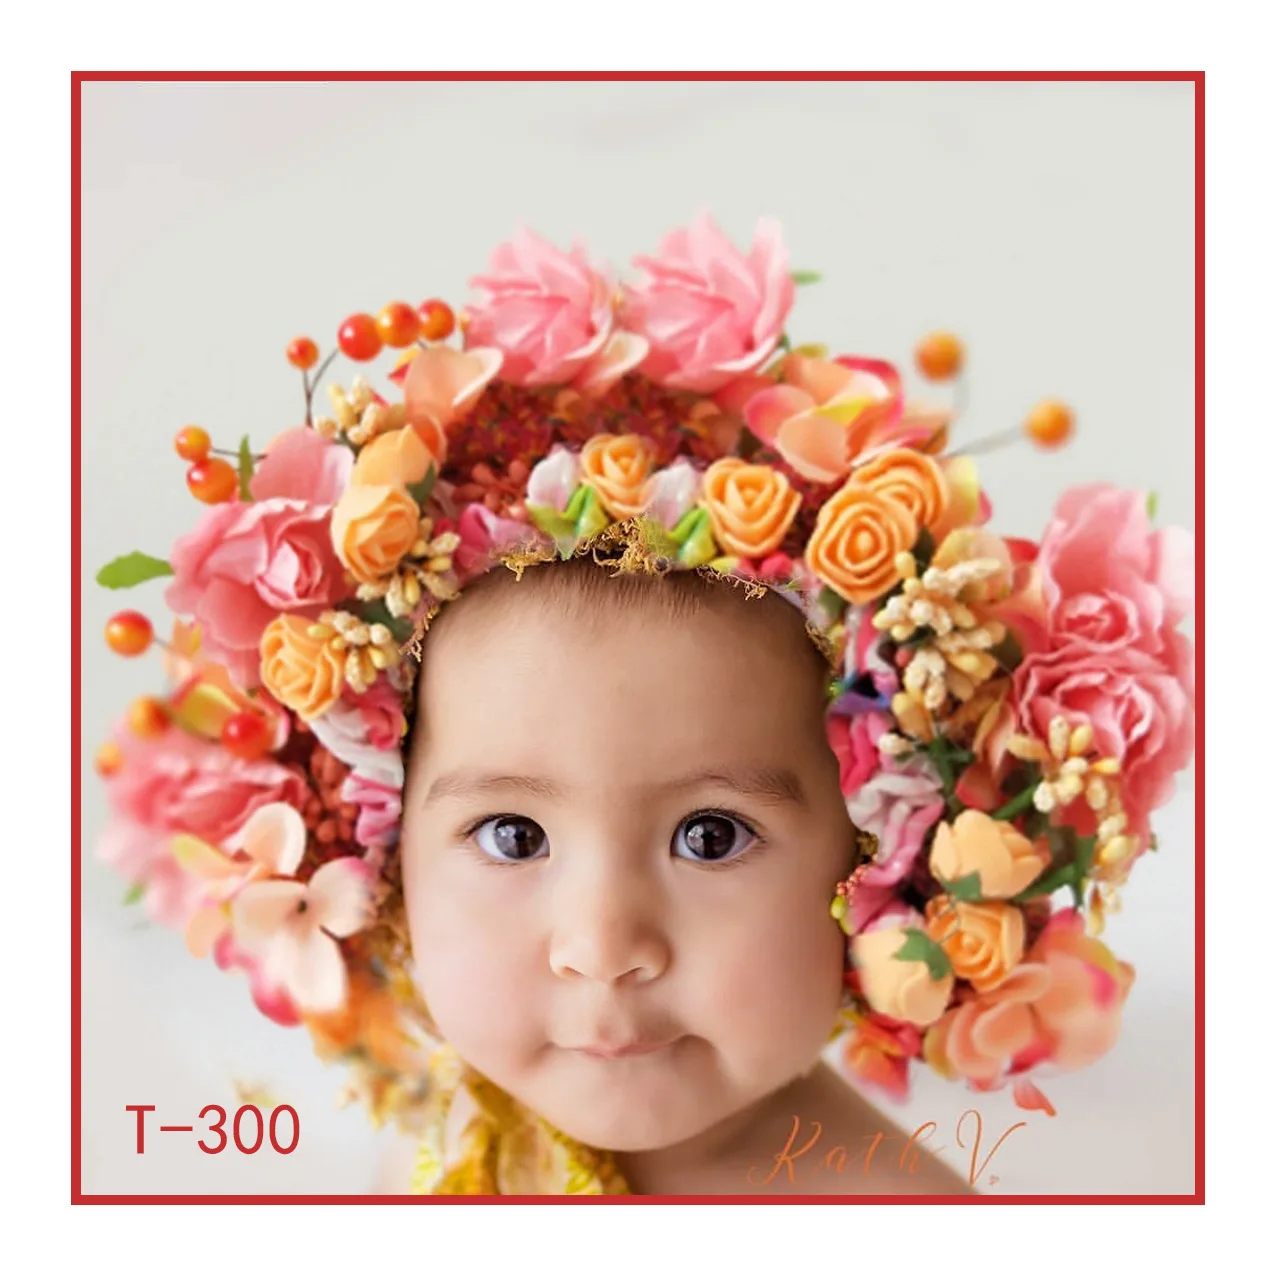 Children's Crown Headband Hair Accessories Baby Newborn Photo Shoot Head Flower Baby Girls Bridal Floral Flower Wreath Hairband newborn photoshoot with parents